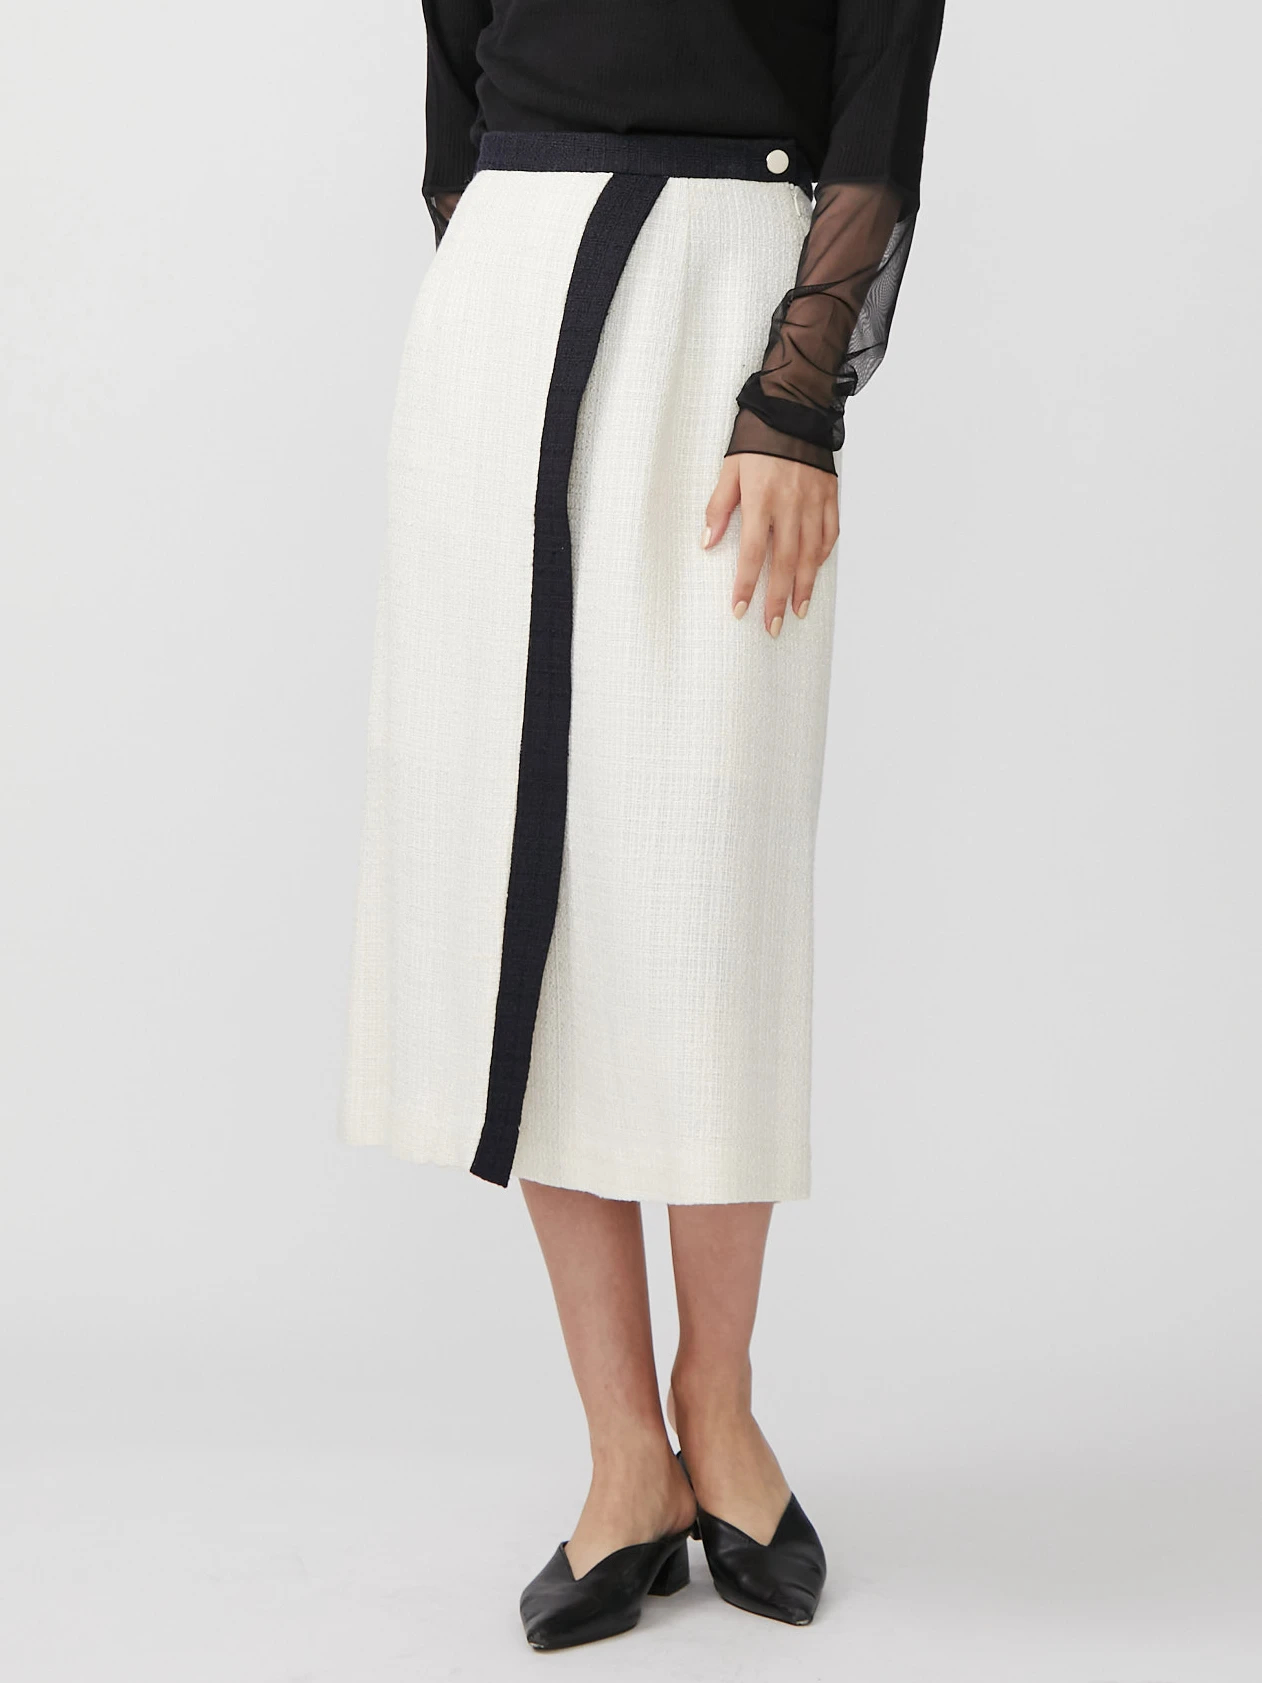 ツイードアシメAラインスカート | レディースファッション通販のTONAL